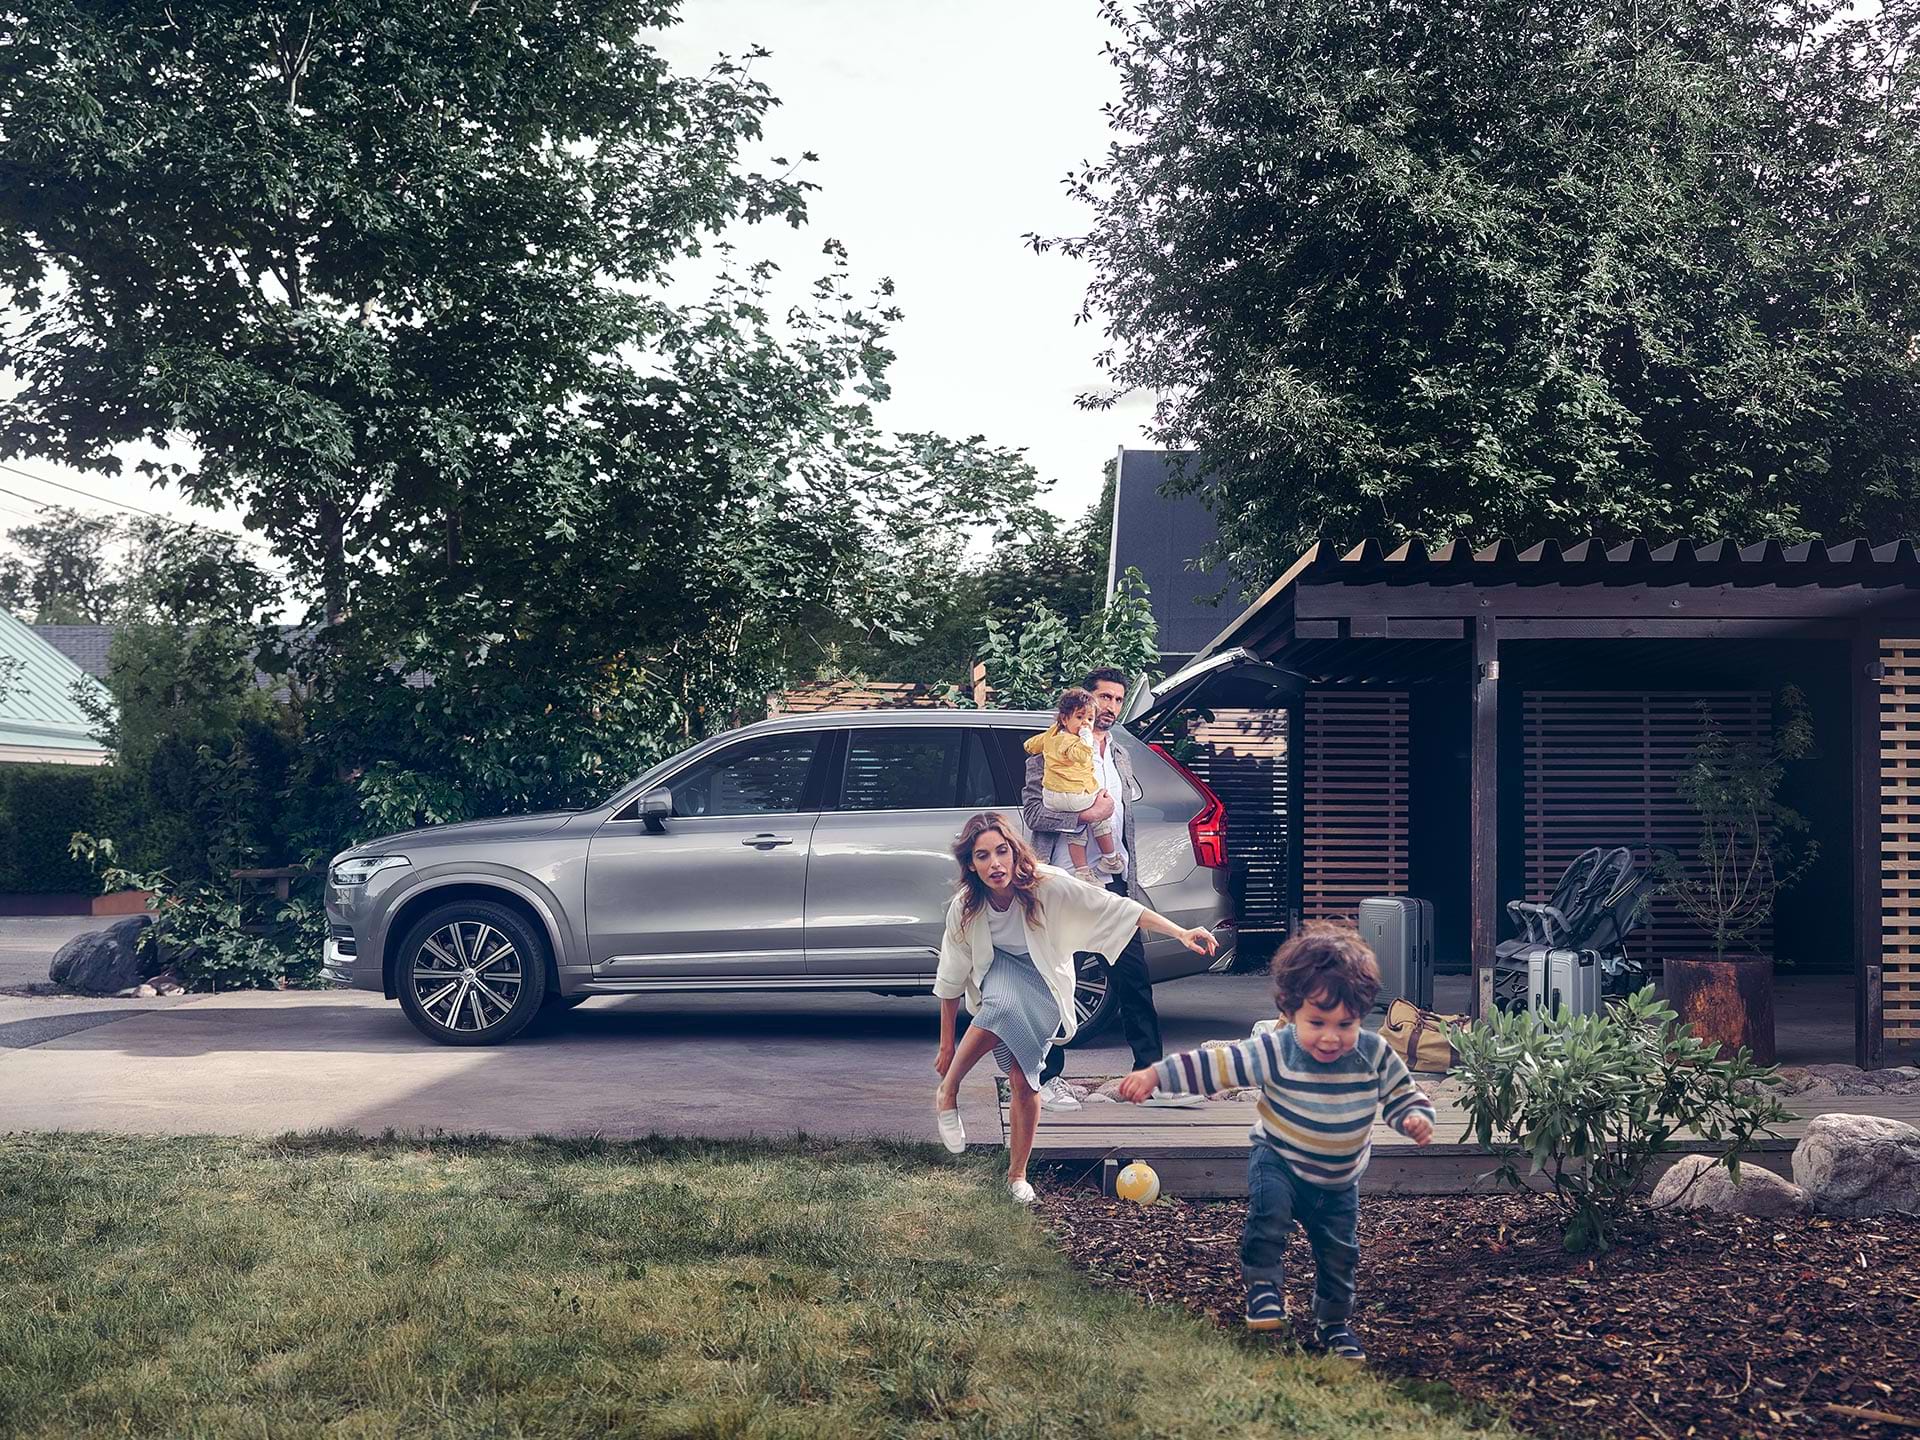 Mens en forstadsfamilie forbereder sig på en tur i deres Volvo SUV, løber et barn tværs over gårdspladsen jagtet af sin mor.